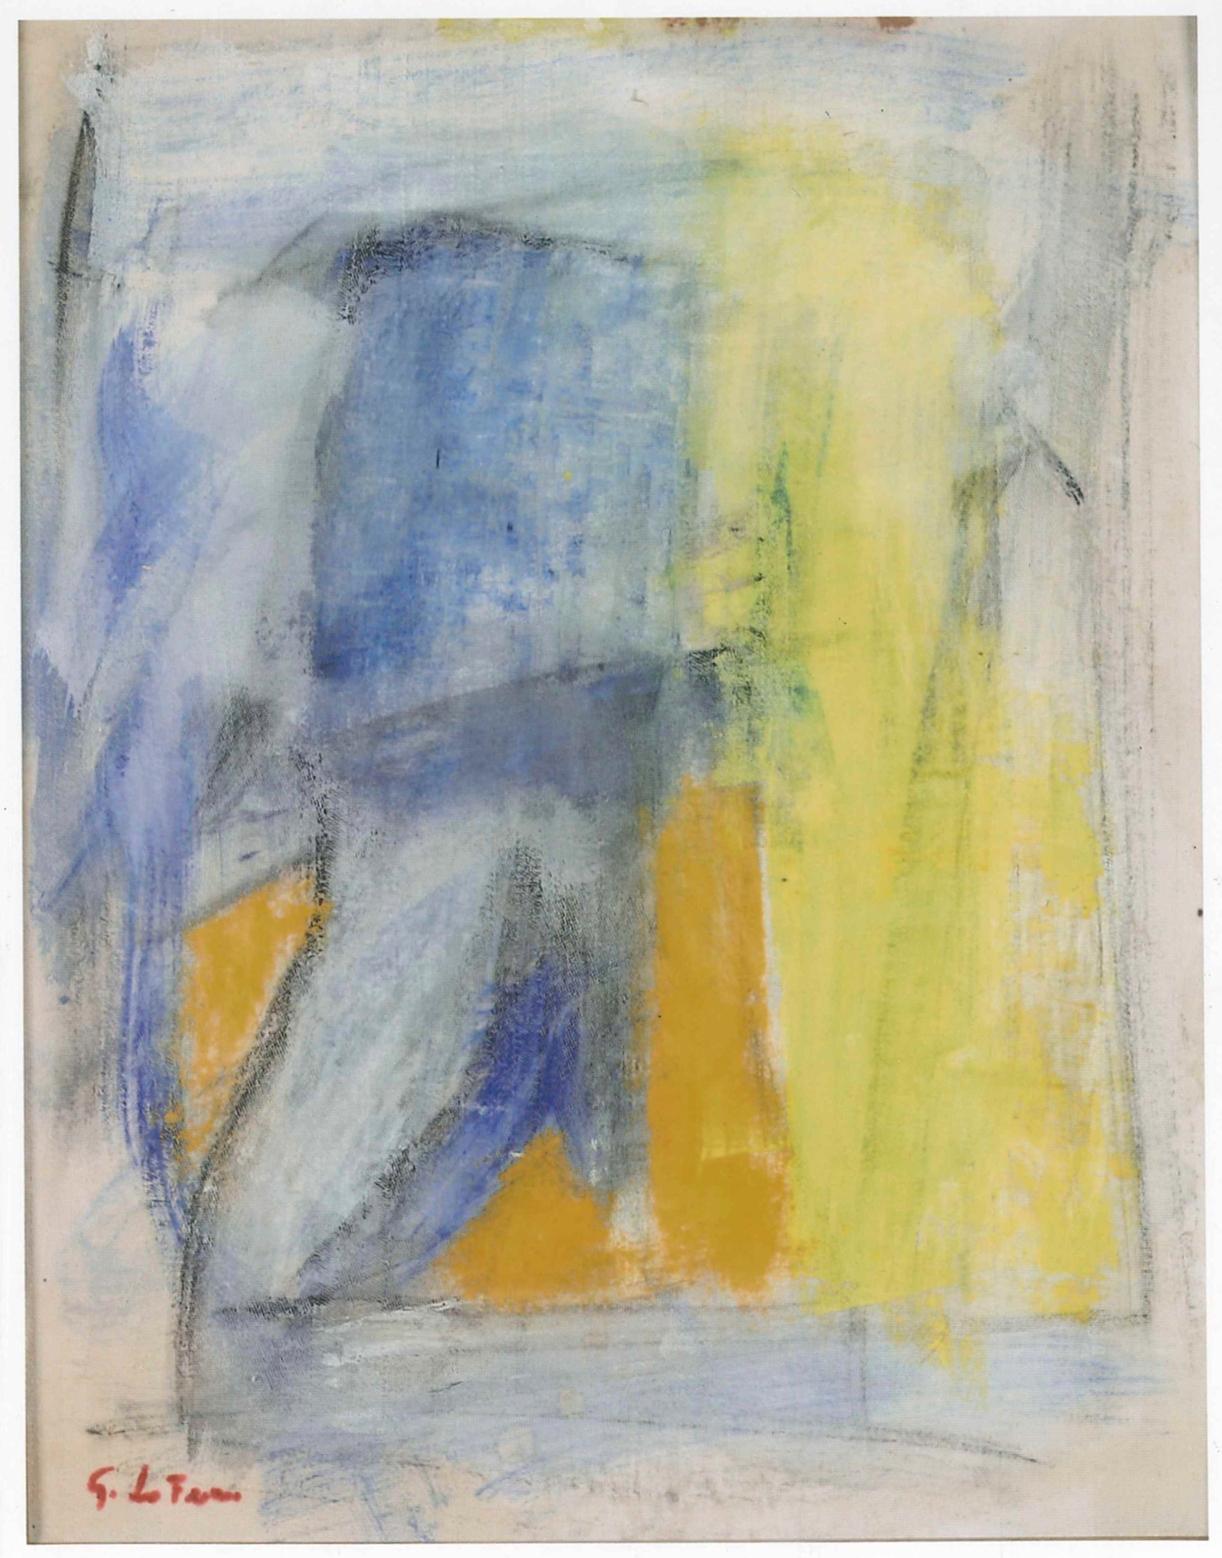 Hommage an De Kooning ist ein Original-Kunstwerk von Giorgio Lo Fermo aus dem Jahr 2012.

Öl auf Leinwand, aufgetragen auf Hartfaserplatte. Handsigniert unten links.

Dieses zeitgenössische Gemälde ist eine schöne Hommage an einen der bedeutendsten